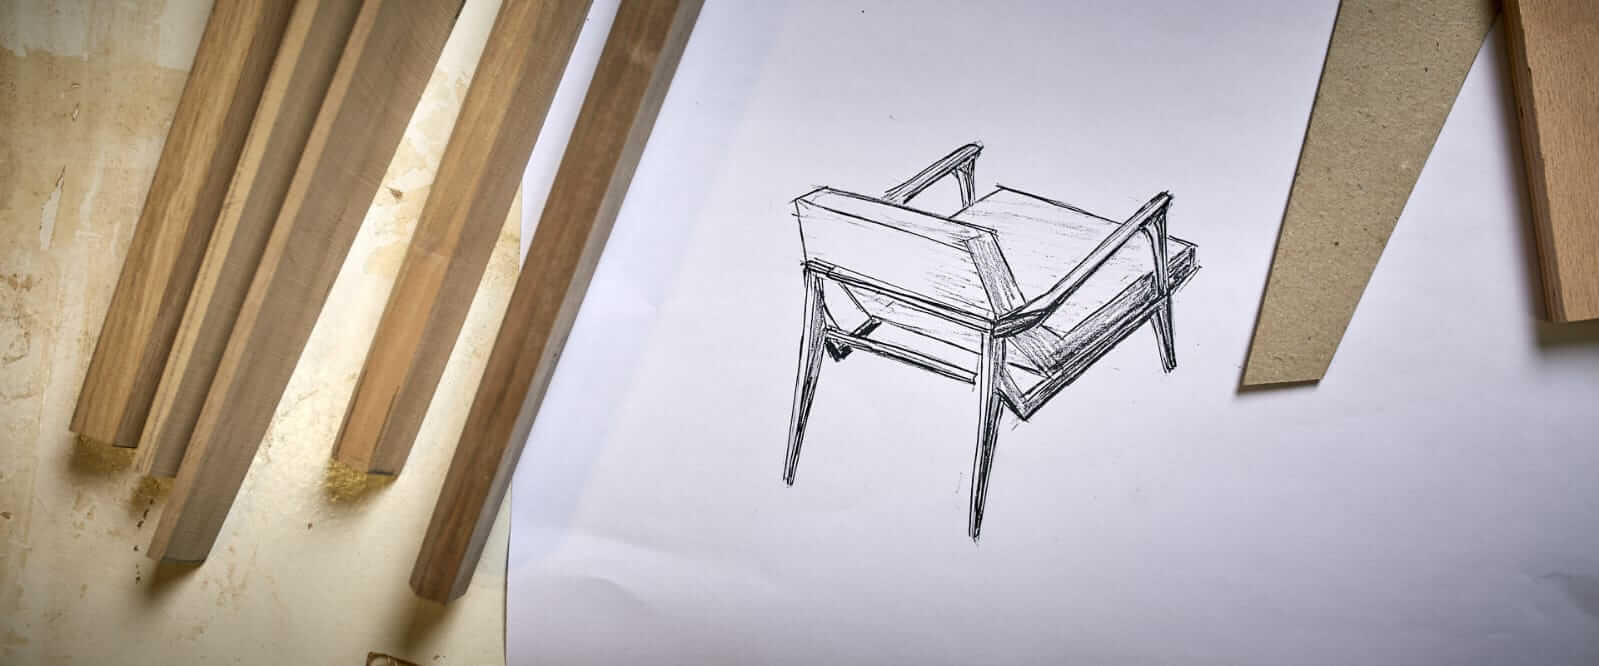 עיצוב של כסא אגוז